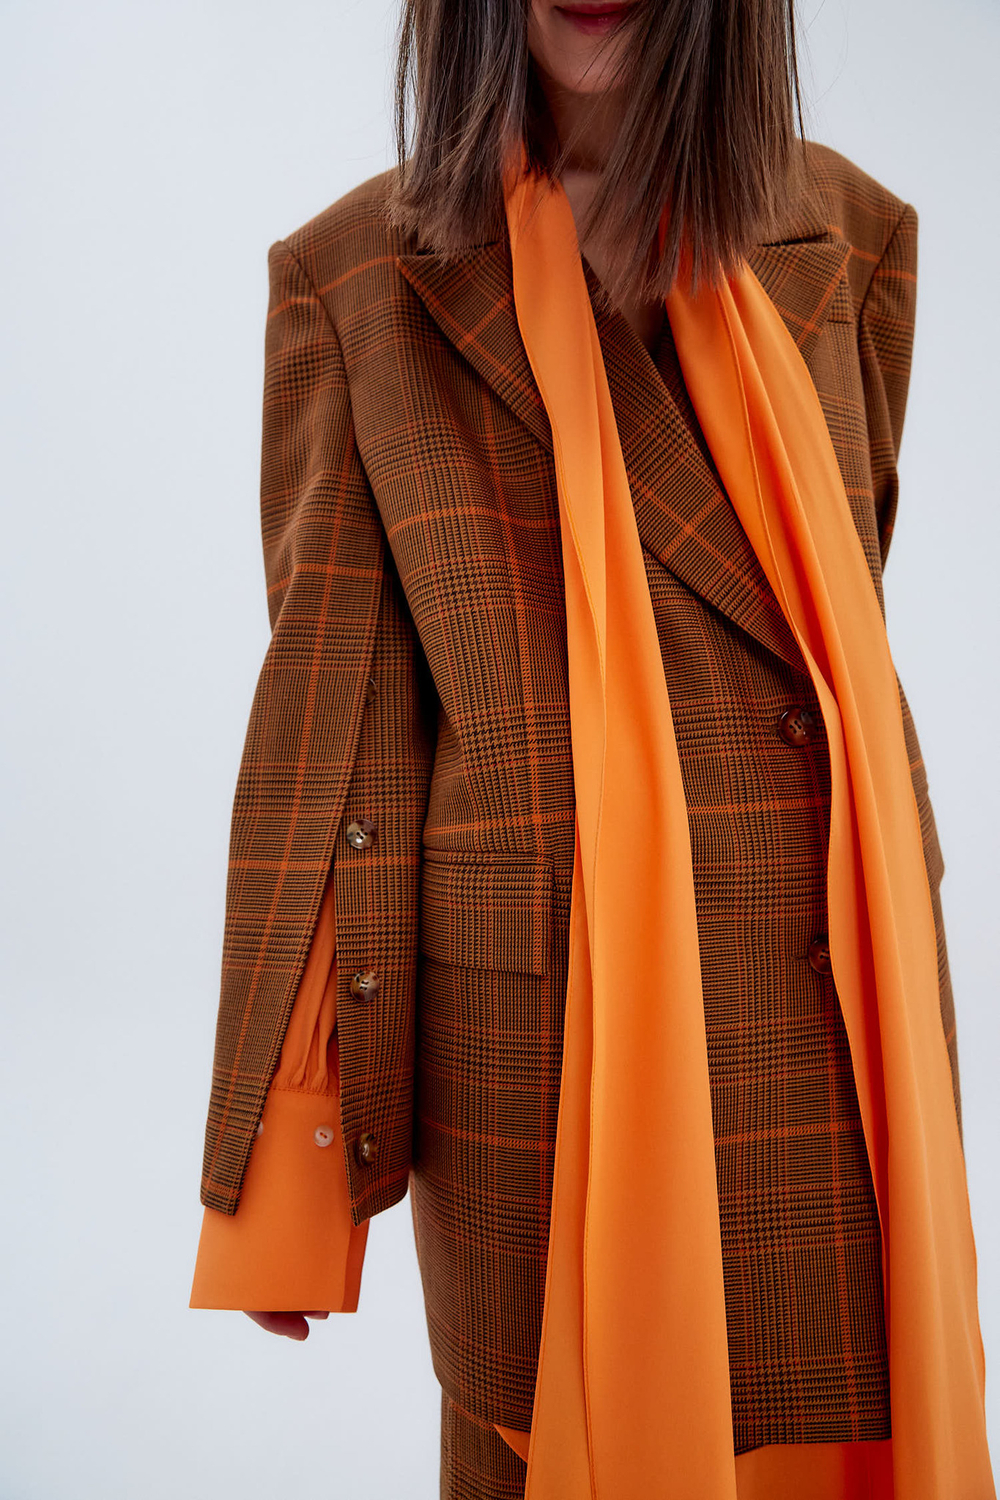 Блуза из шелка Стелла Маккартни с асимметричным низом оранж